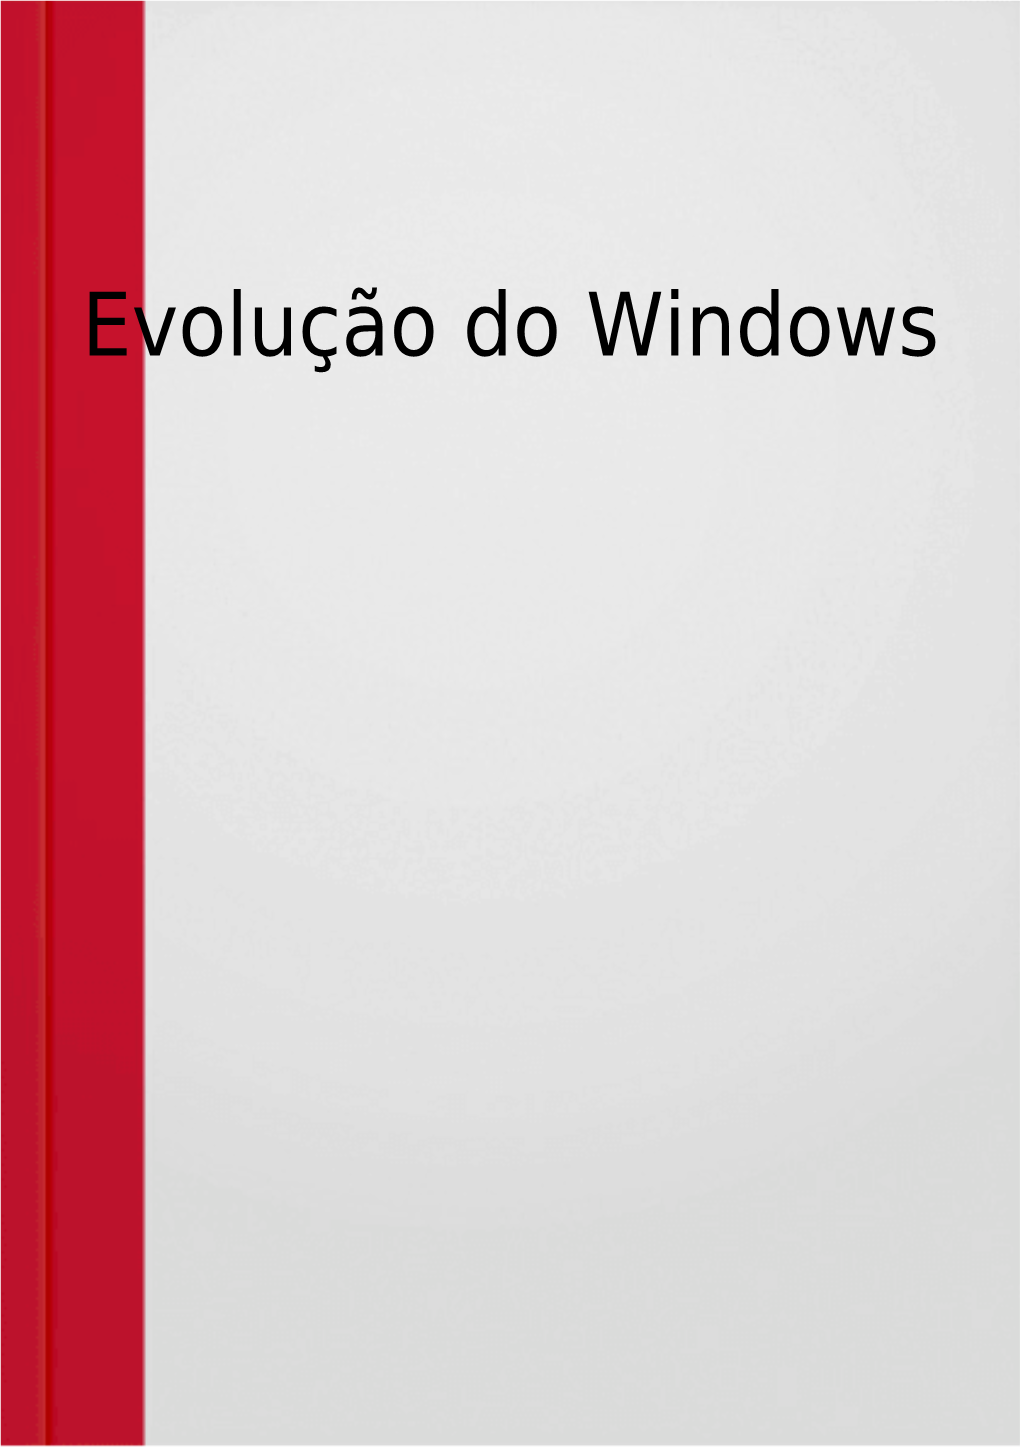 Windows Server 2008 Windows 7 (NT 6.1) Windows 8 (NT 6.2) Windows 8.1 (NT 6.3) Windows 10 (NT 10.0) Windows XP (NT 5.1)